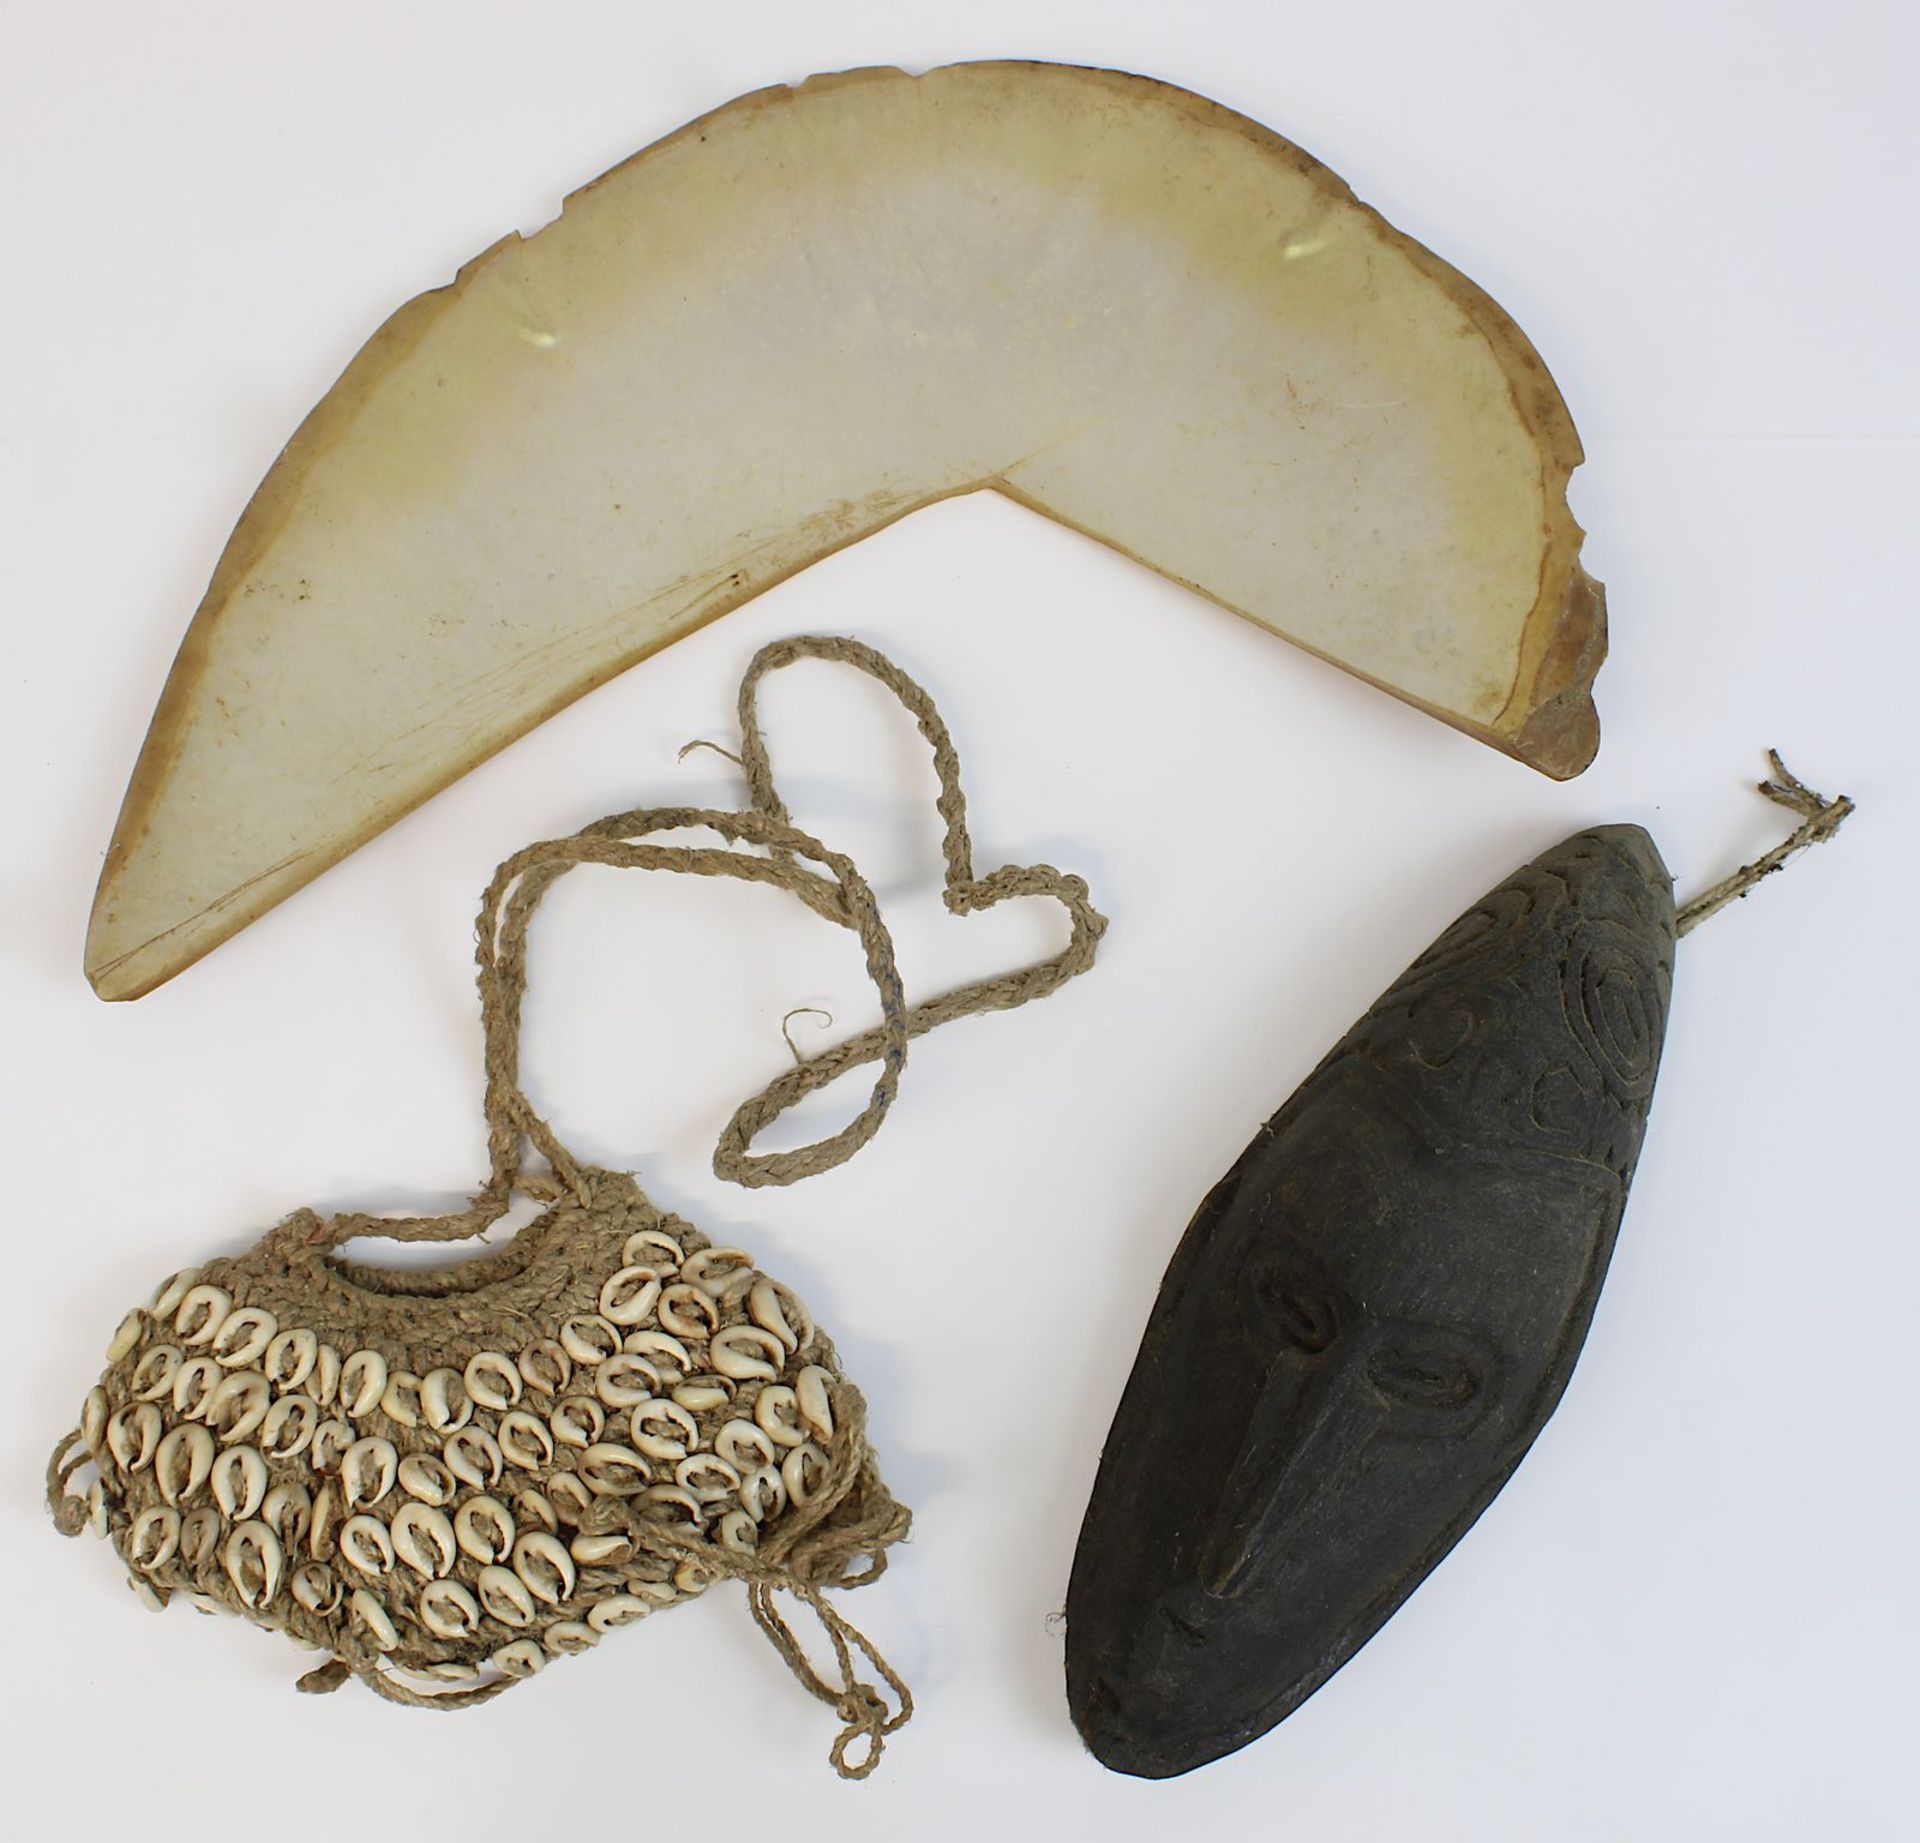 Miniatur-Amulettmaske, kleine Tasche und Wertmuschel, Sepik, Papua-Neuguinea: Kina-Wertmuschel aus